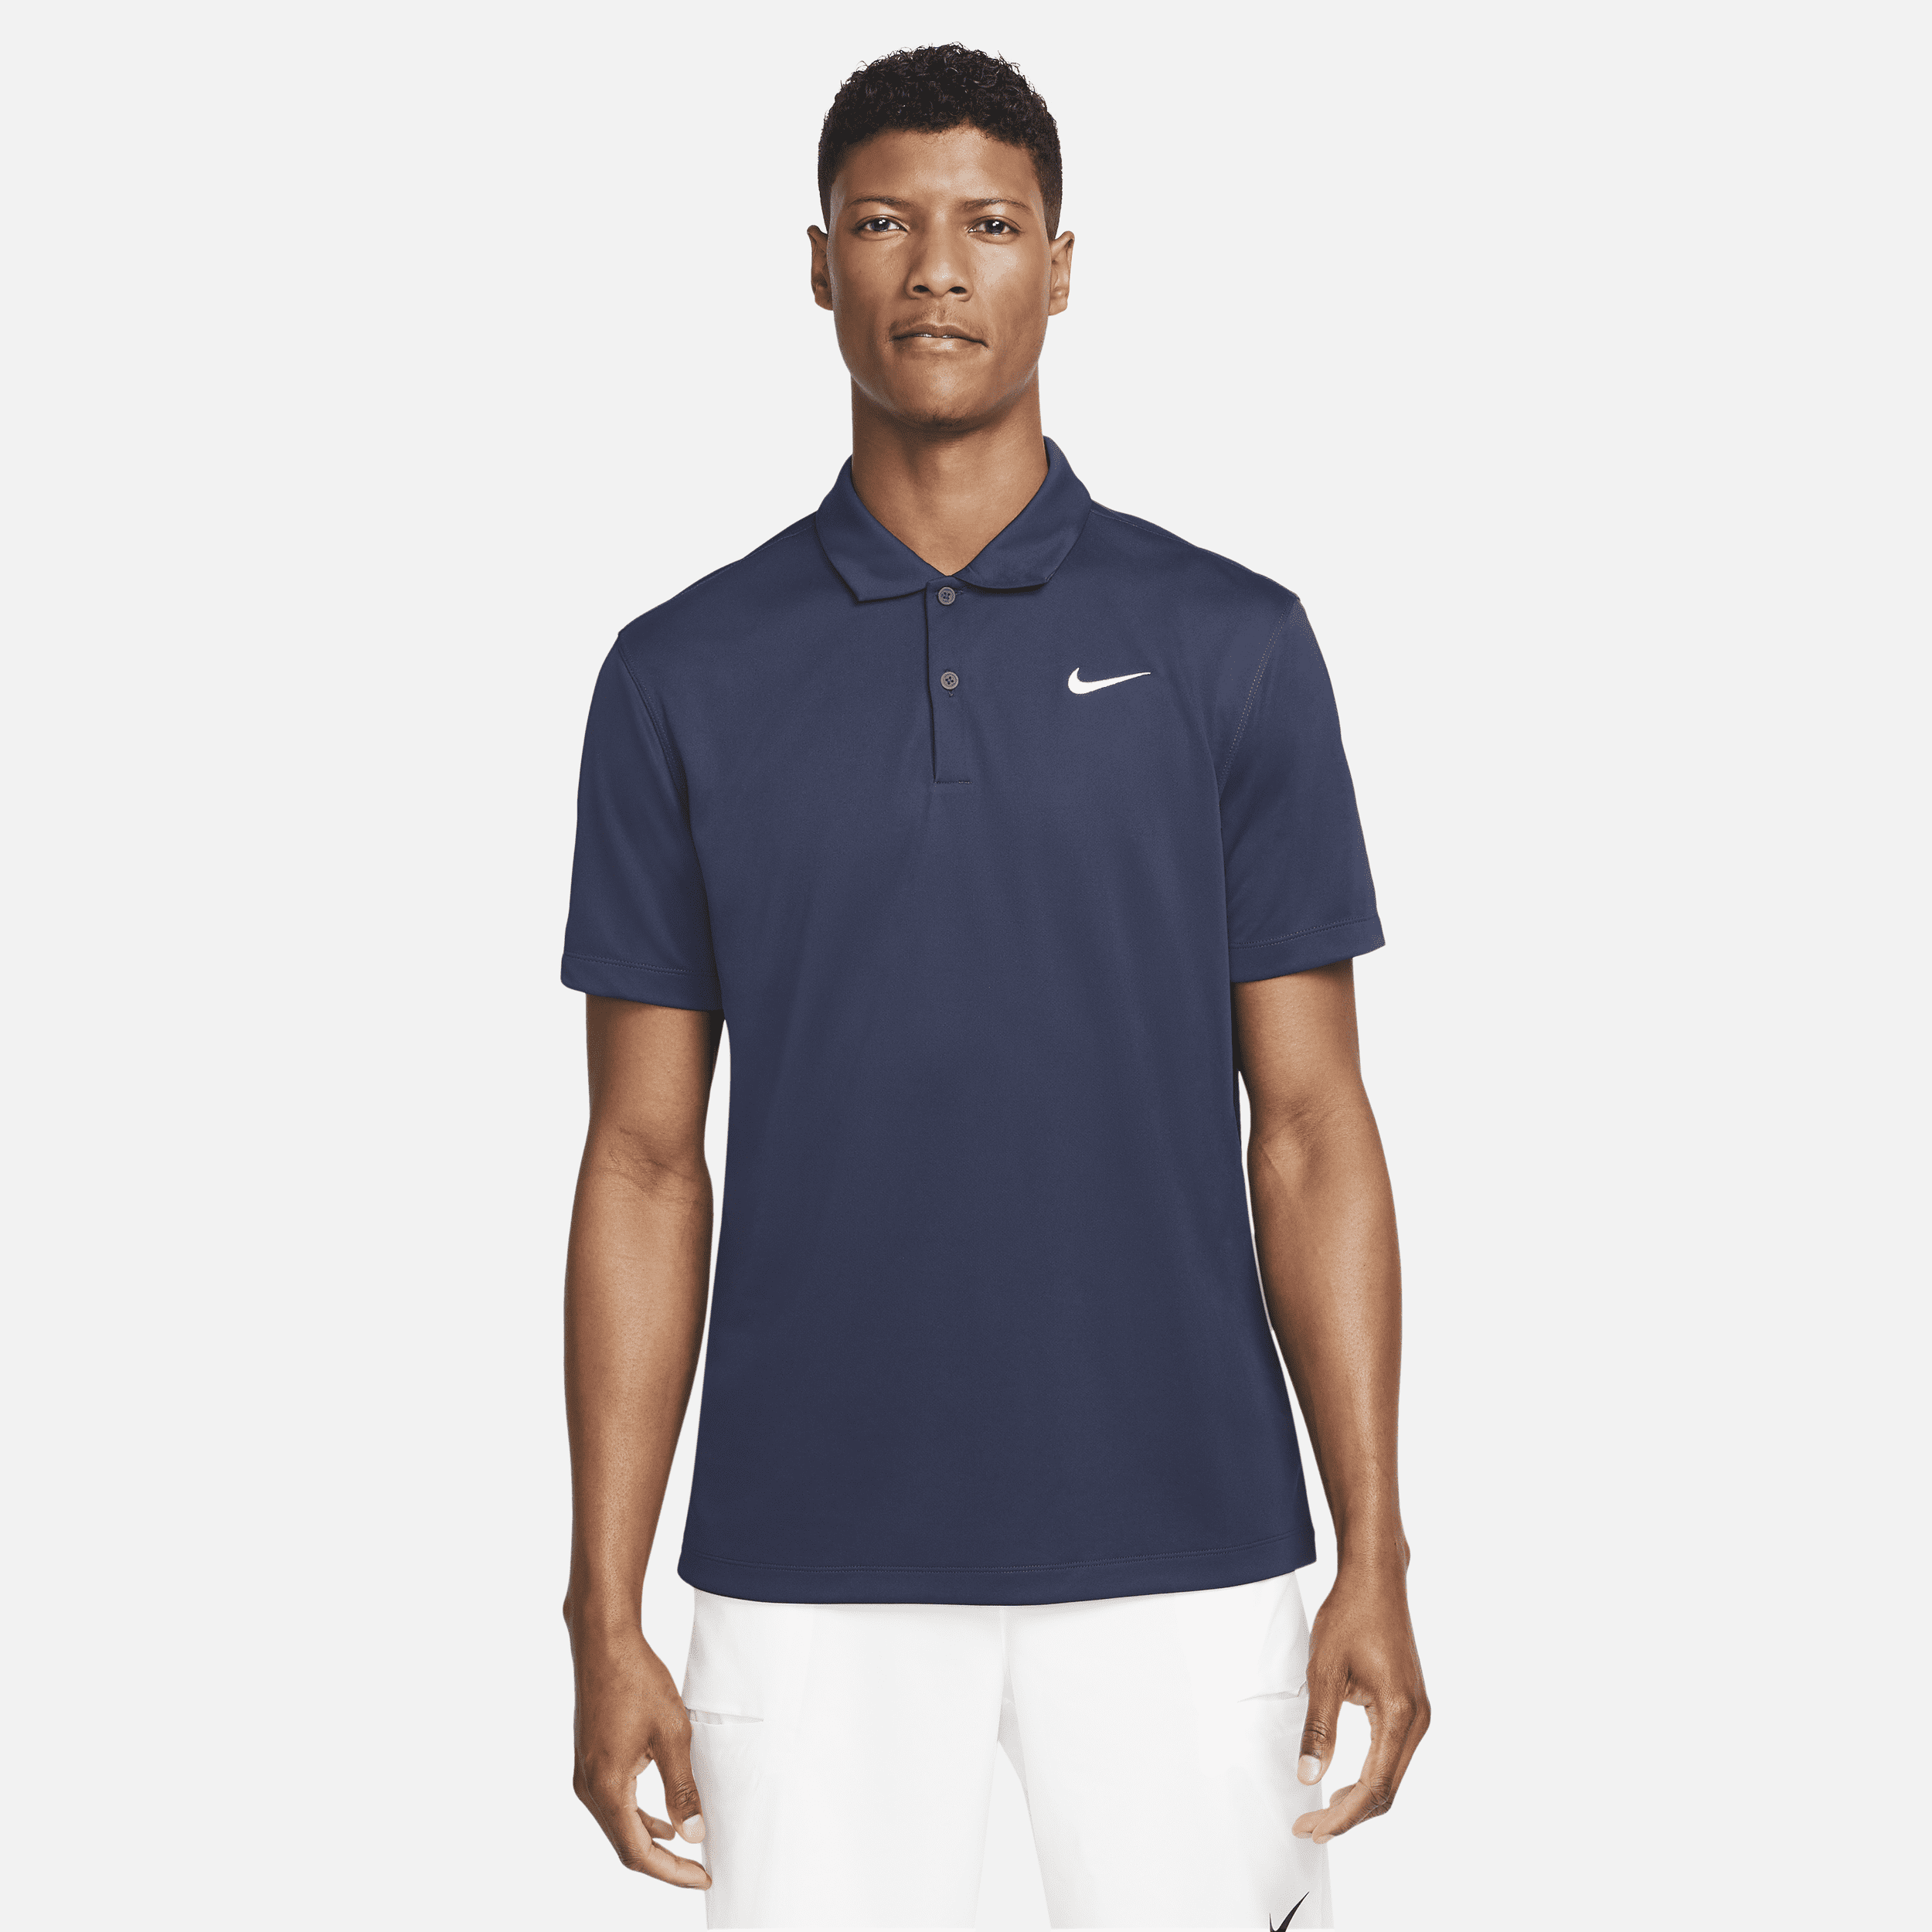 Ανδρική μπλούζα πόλο για τένις NikeCourt Dri-FIT - Μπλε